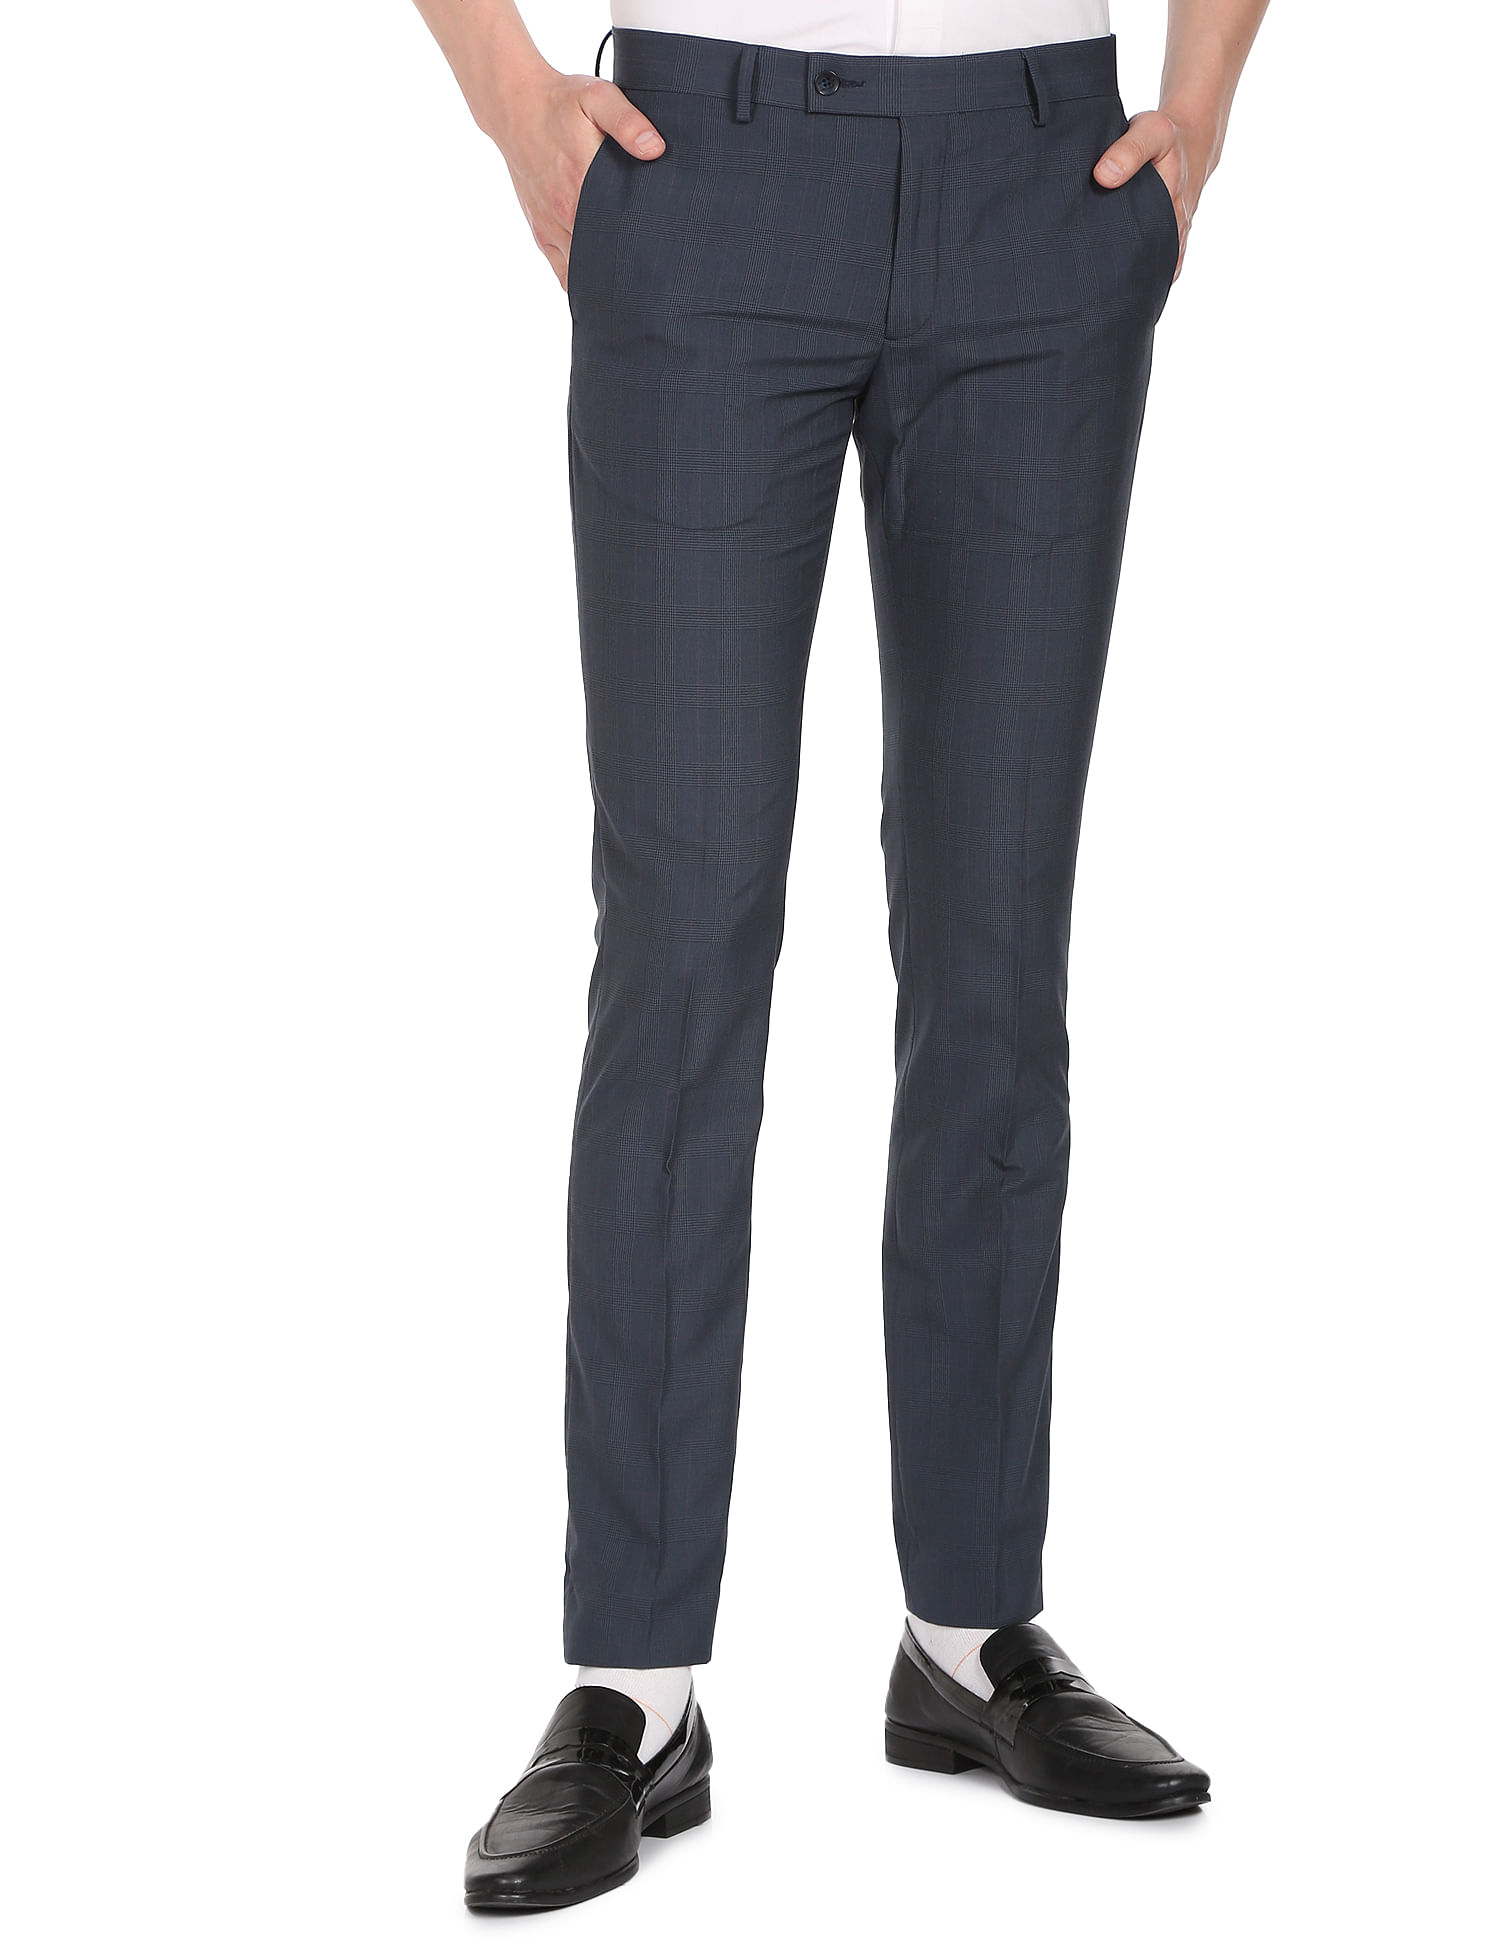 Wehilion Men's Premium Slim Fit Dress Suit Pants Slacks Tight Suit Elastic Formal  Trousers,Navy Blue,XL - Walmart.com